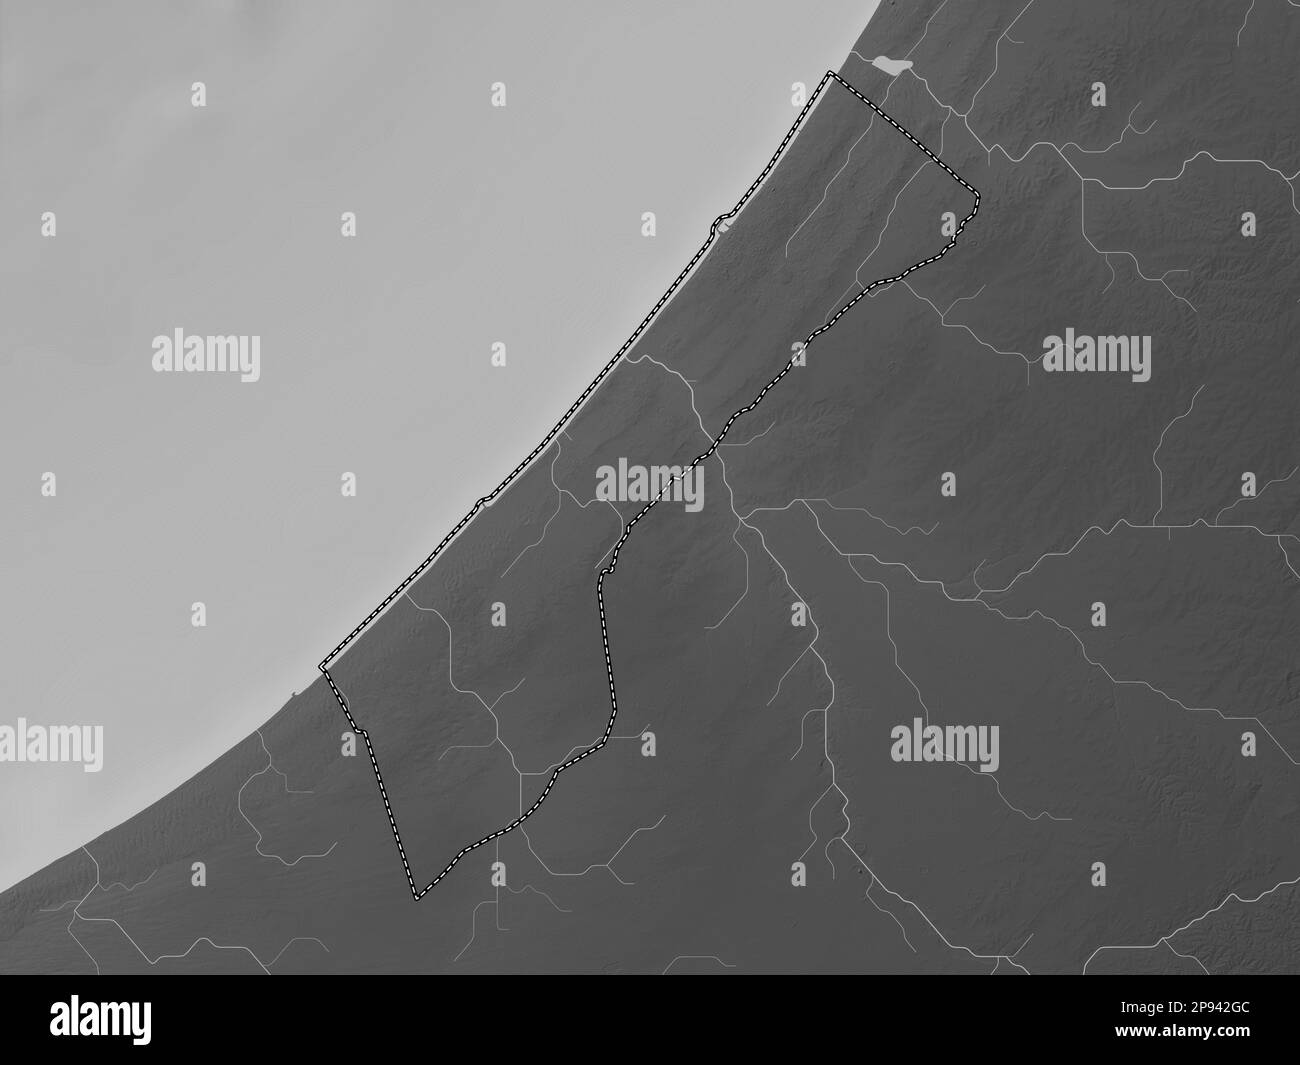 Striscia di Gaza, regione della Palestina. Mappa in scala di grigi con laghi e fiumi Foto Stock